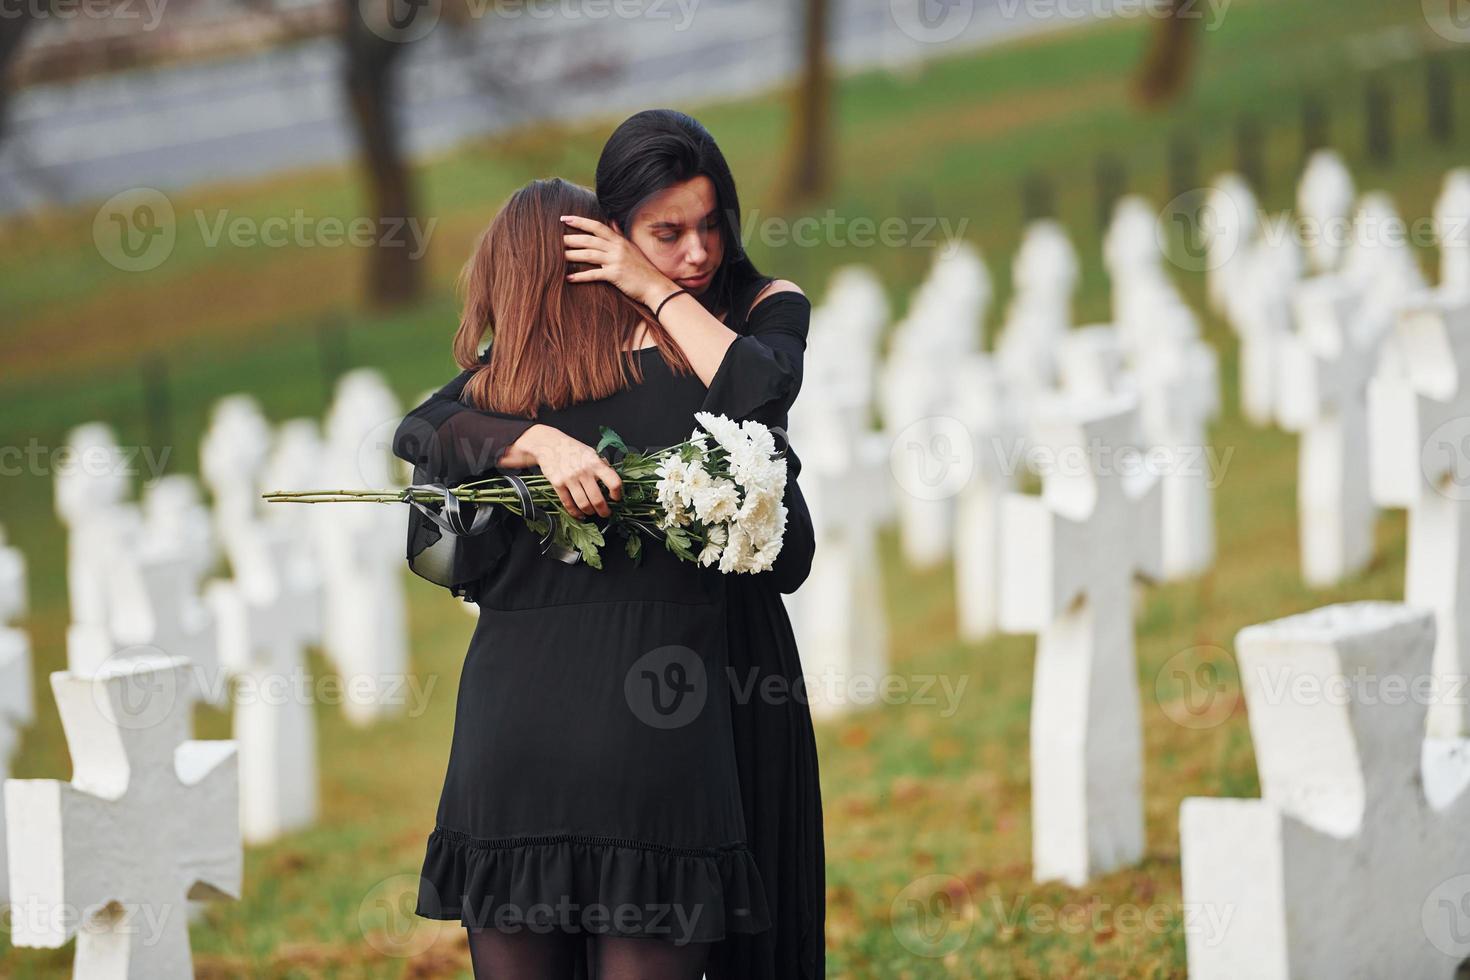 abrazándose y llorando. dos mujeres jóvenes vestidas de negro visitando el cementerio con muchas cruces blancas. concepción del funeral y la muerte foto